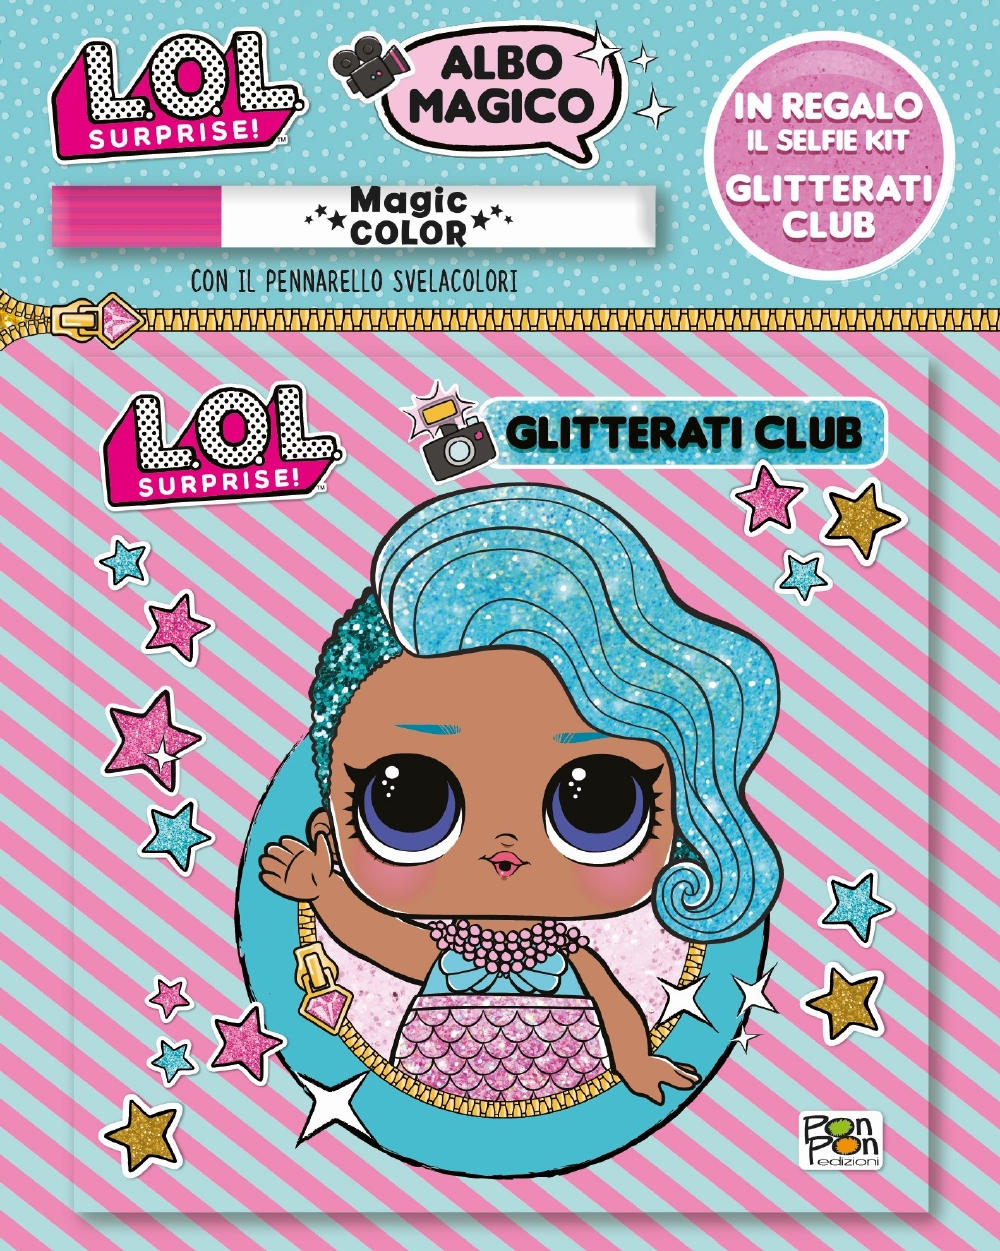 Albo Magico LOL Surprise! - Glitterati Club::Con il pennarello svelacolori - In regalo il Selfie Kit Glitterati Club